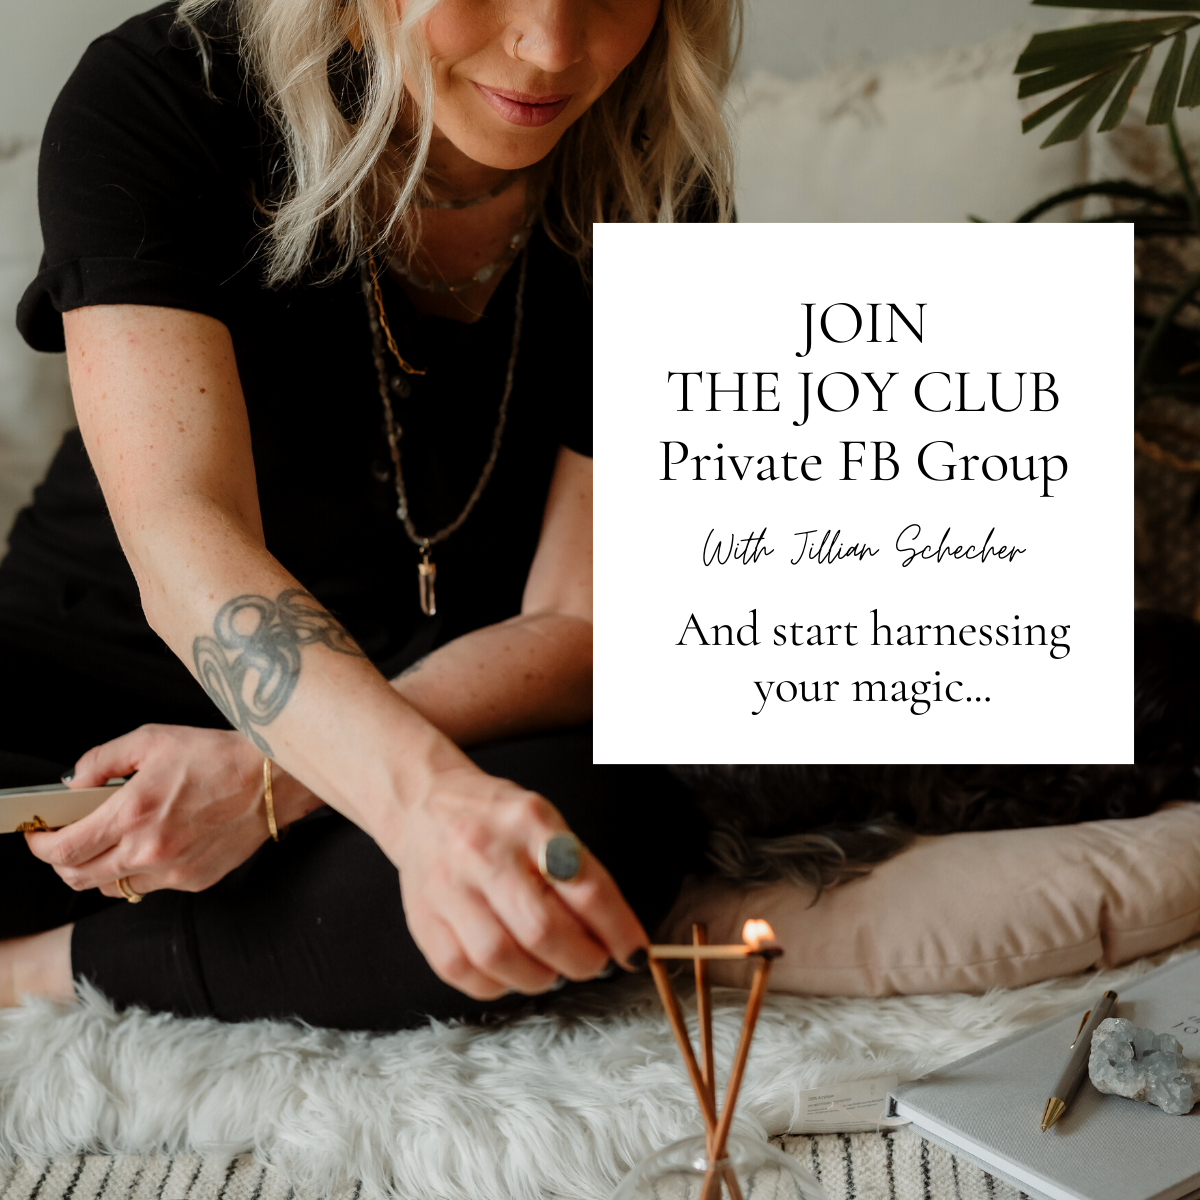 Join The Joy Club with Jillian Schecher